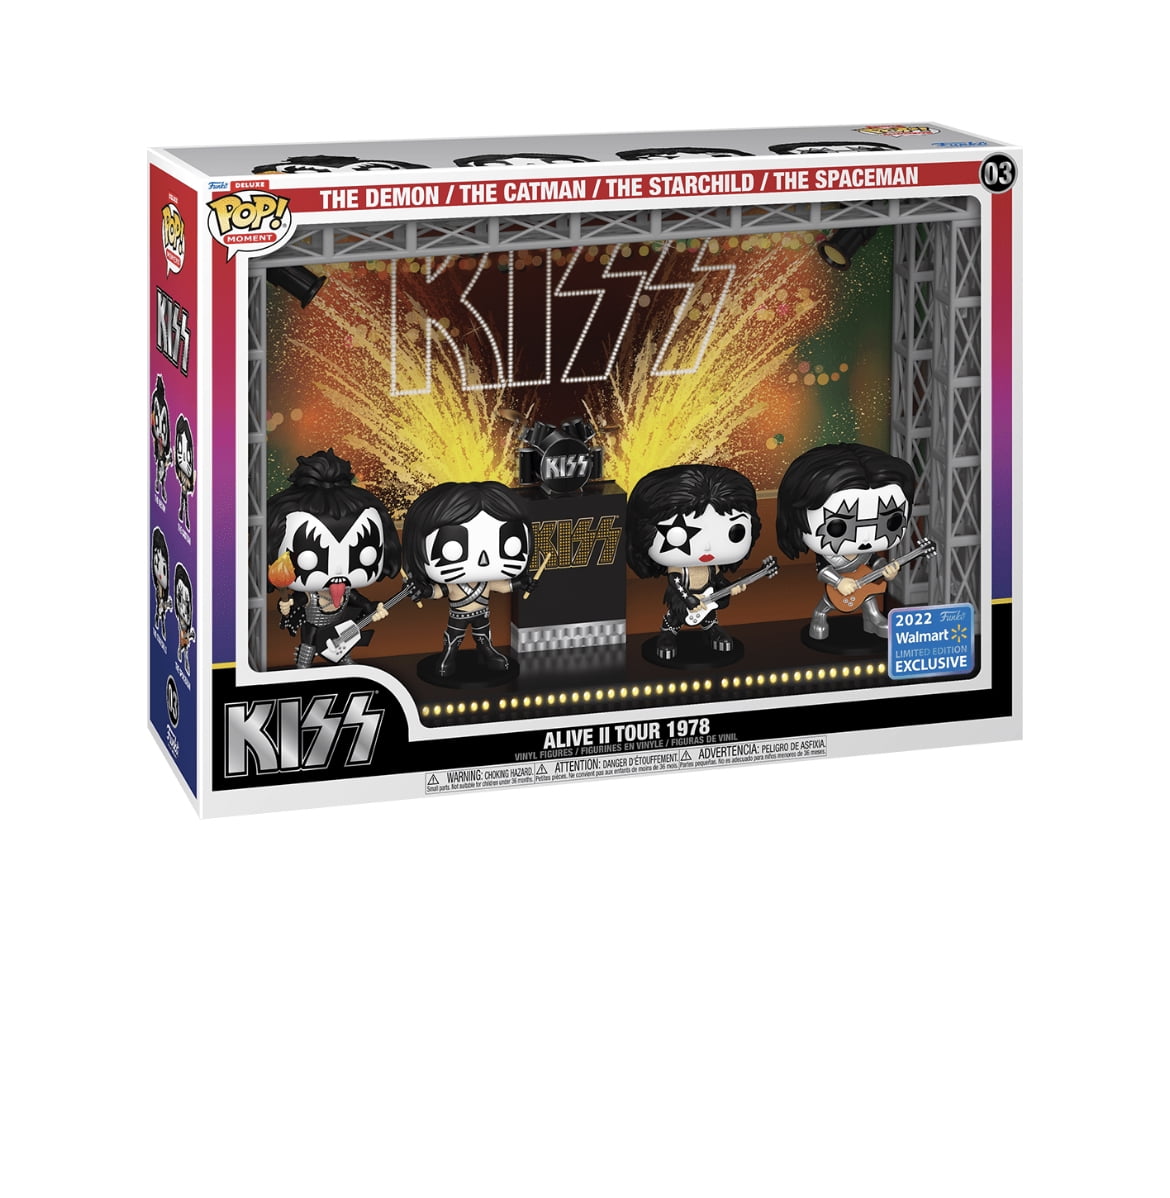 Funko Pop! Moment Deluxe: Kiss' Alive II Tour in 1978 Vinyl Figures (2022 Edition Walmart Exclusive) Walmart.com